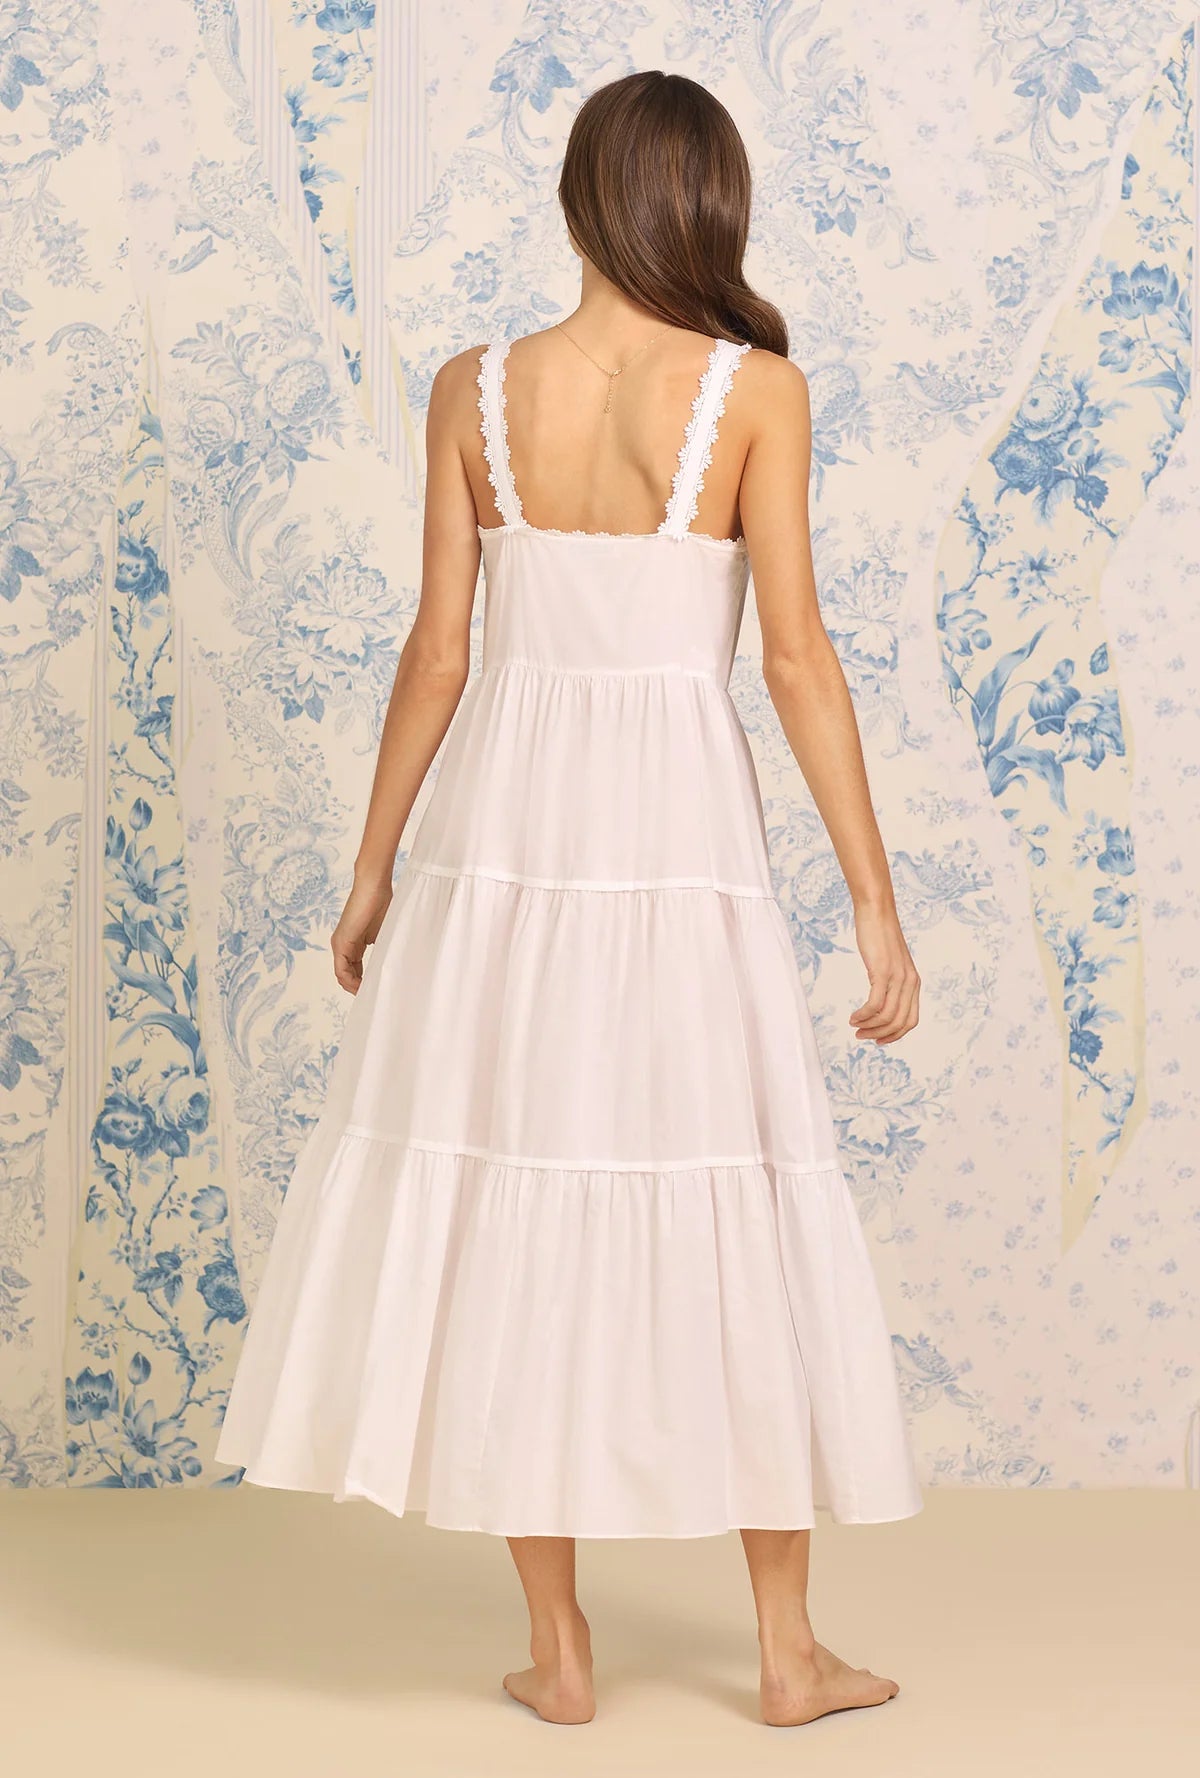 The "Monica" Classic White Cotton Nightgown | White